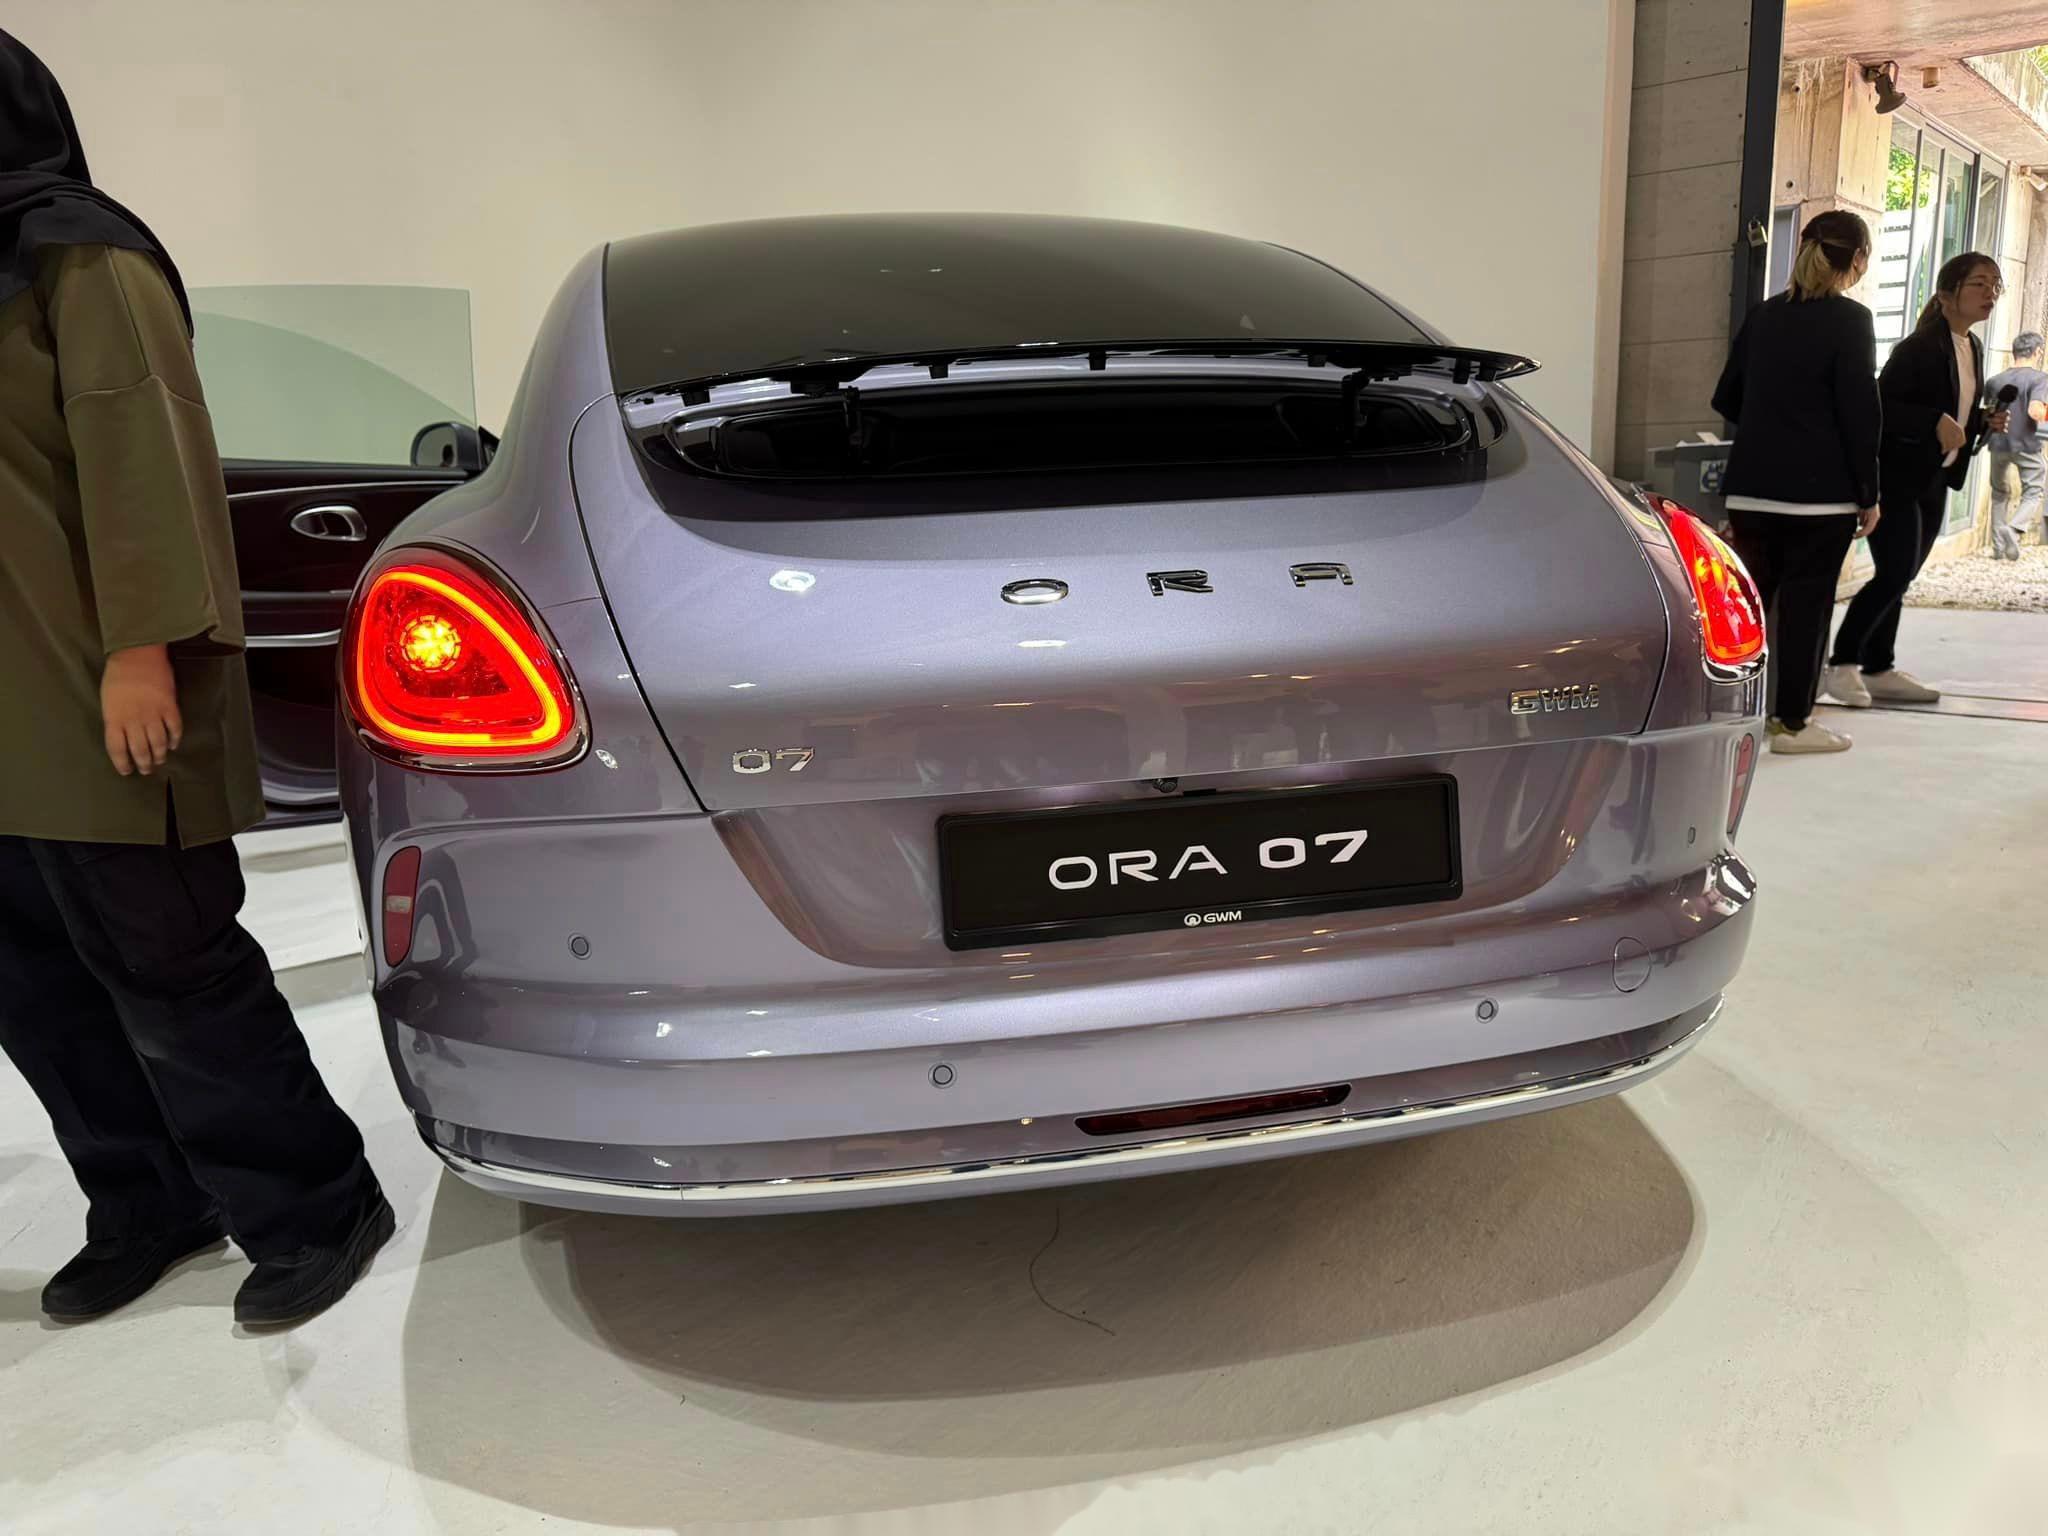 欧拉闪电猫(gwm ora 07)于马来西亚开启预定,定位b级运动型轿车,动力